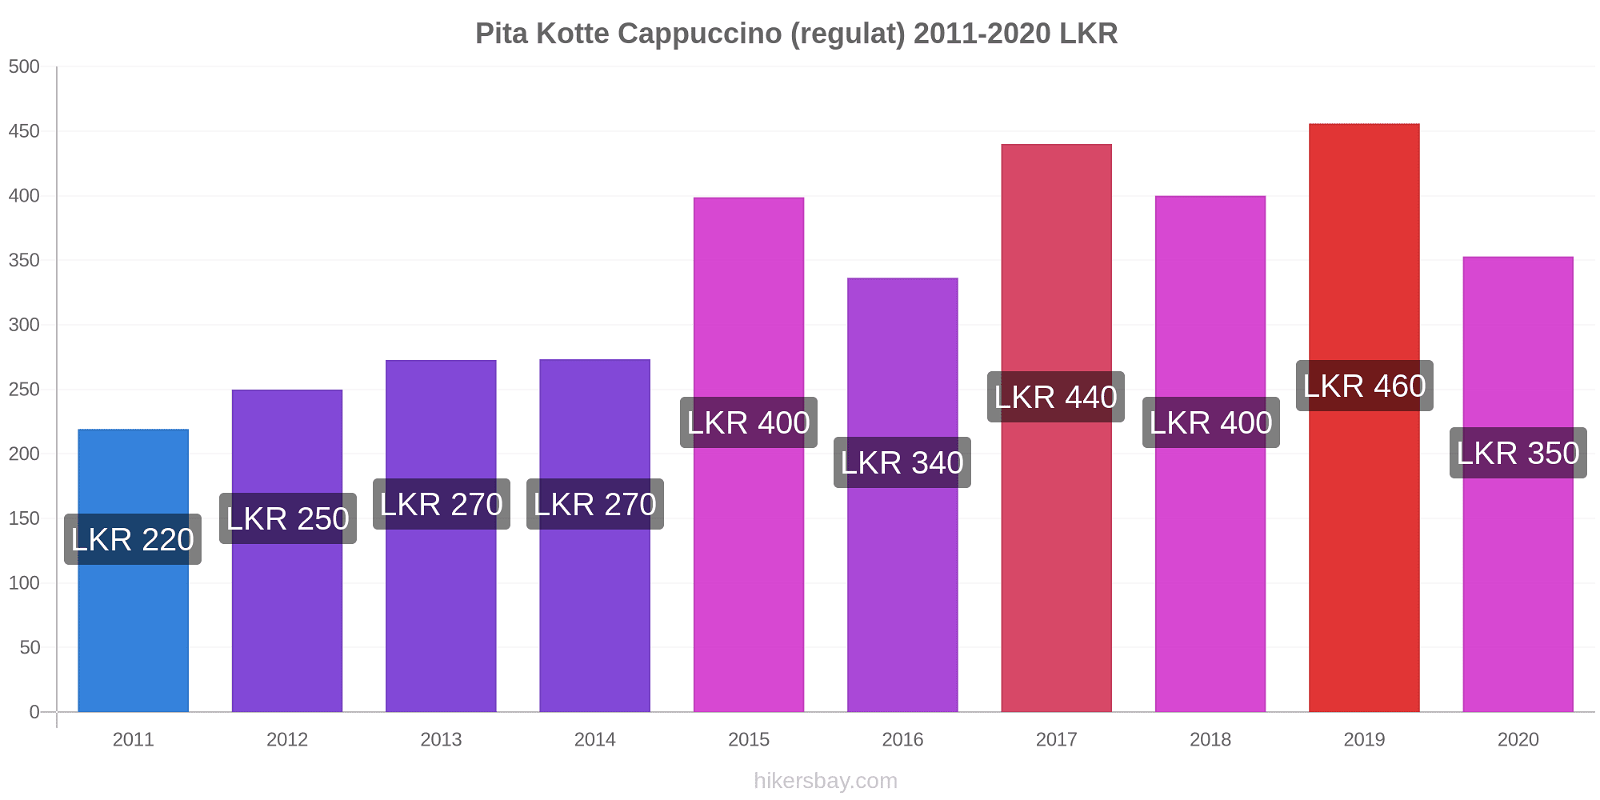 Pita Kotte modificări de preț Cappuccino (regulat) hikersbay.com